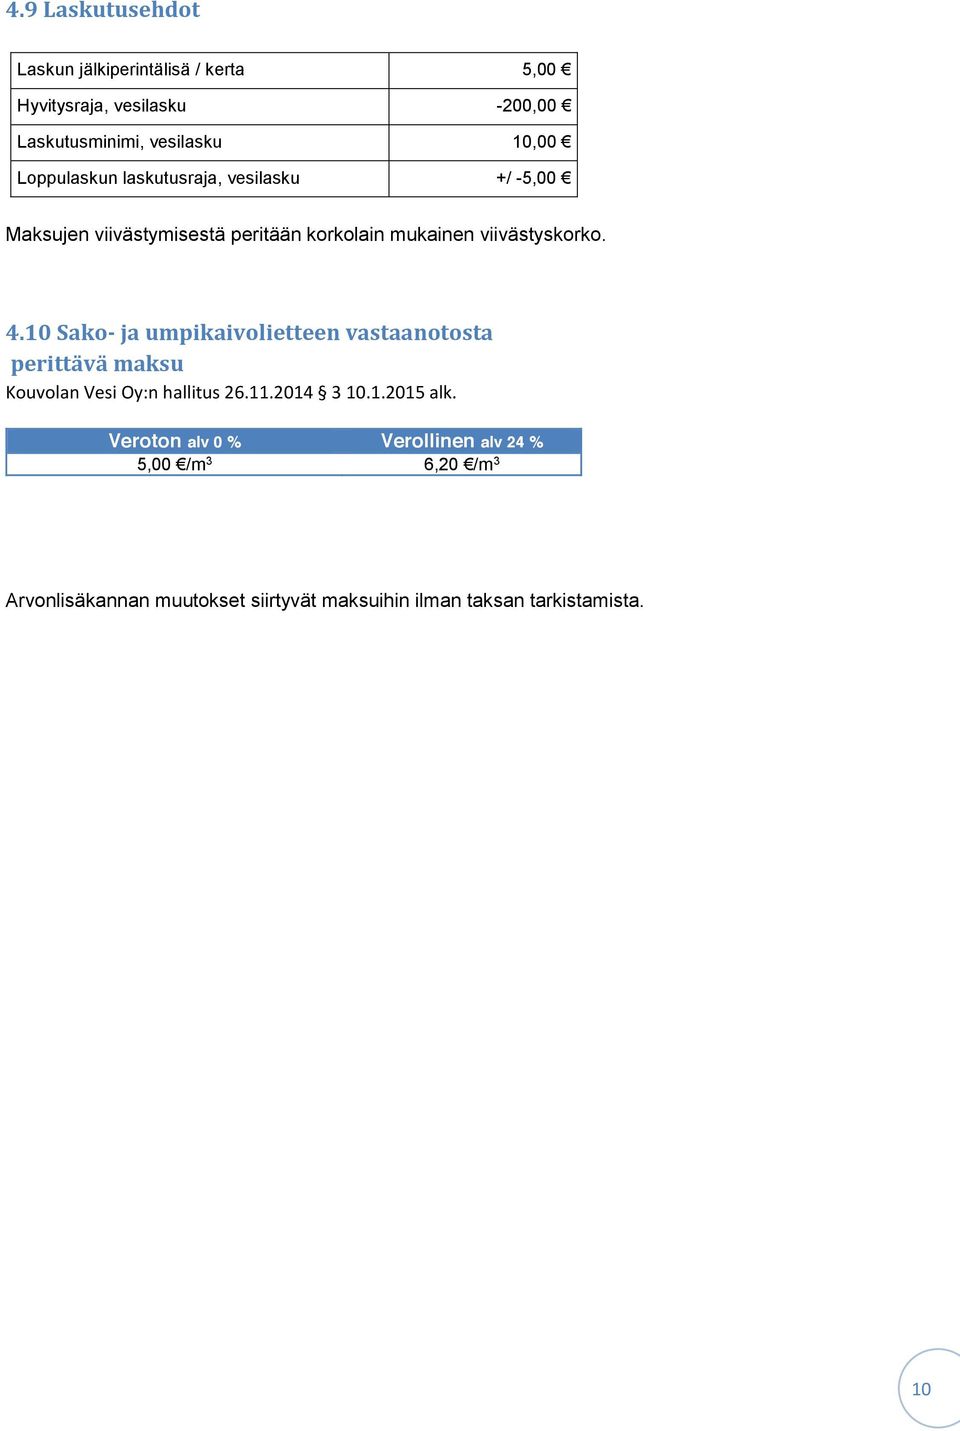 10 Sako- ja umpikaivolietteen vastaanotosta perittävä maksu Kouvolan Vesi Oy:n hallitus 26.11.2014 3 10.1.2015 alk.